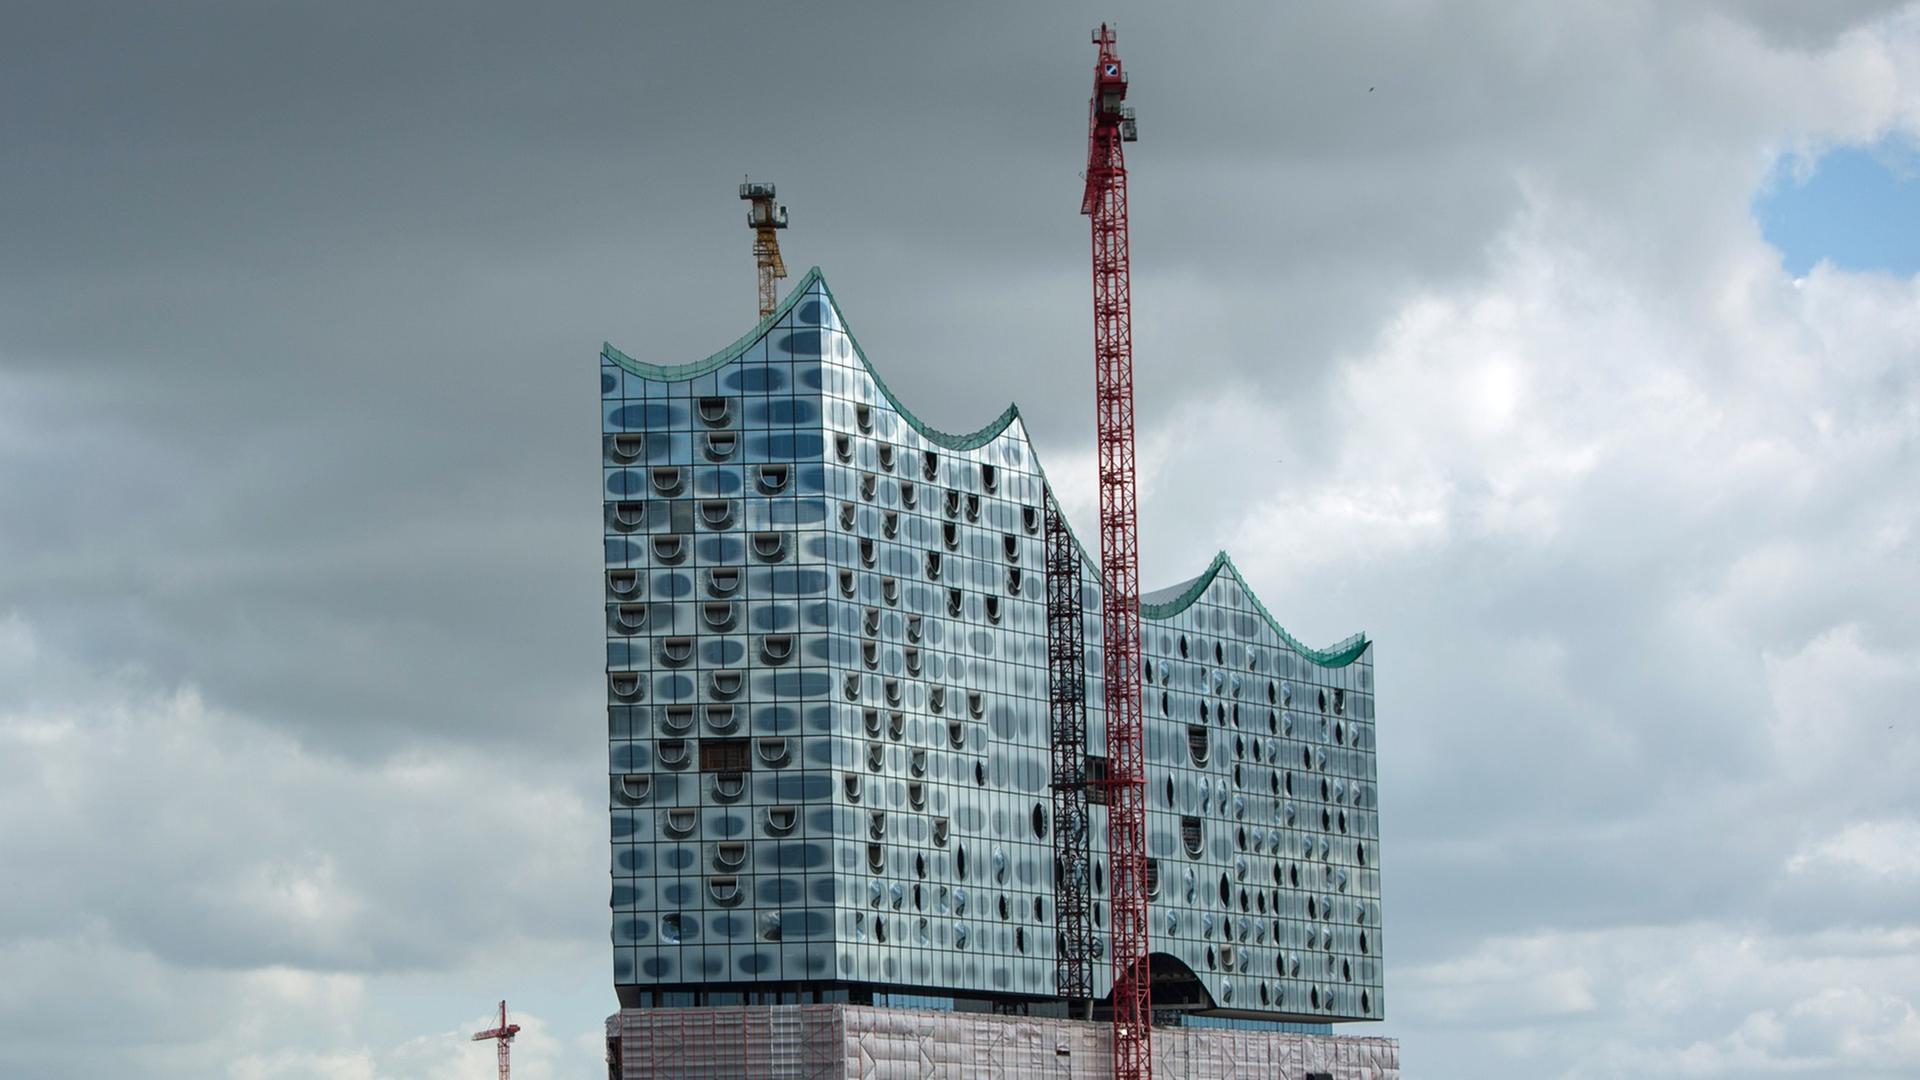 Die Elbphilharmonie in der Hafencity in Hamburg - sie wurde mehr als zehn Mal so teuer als geplant.